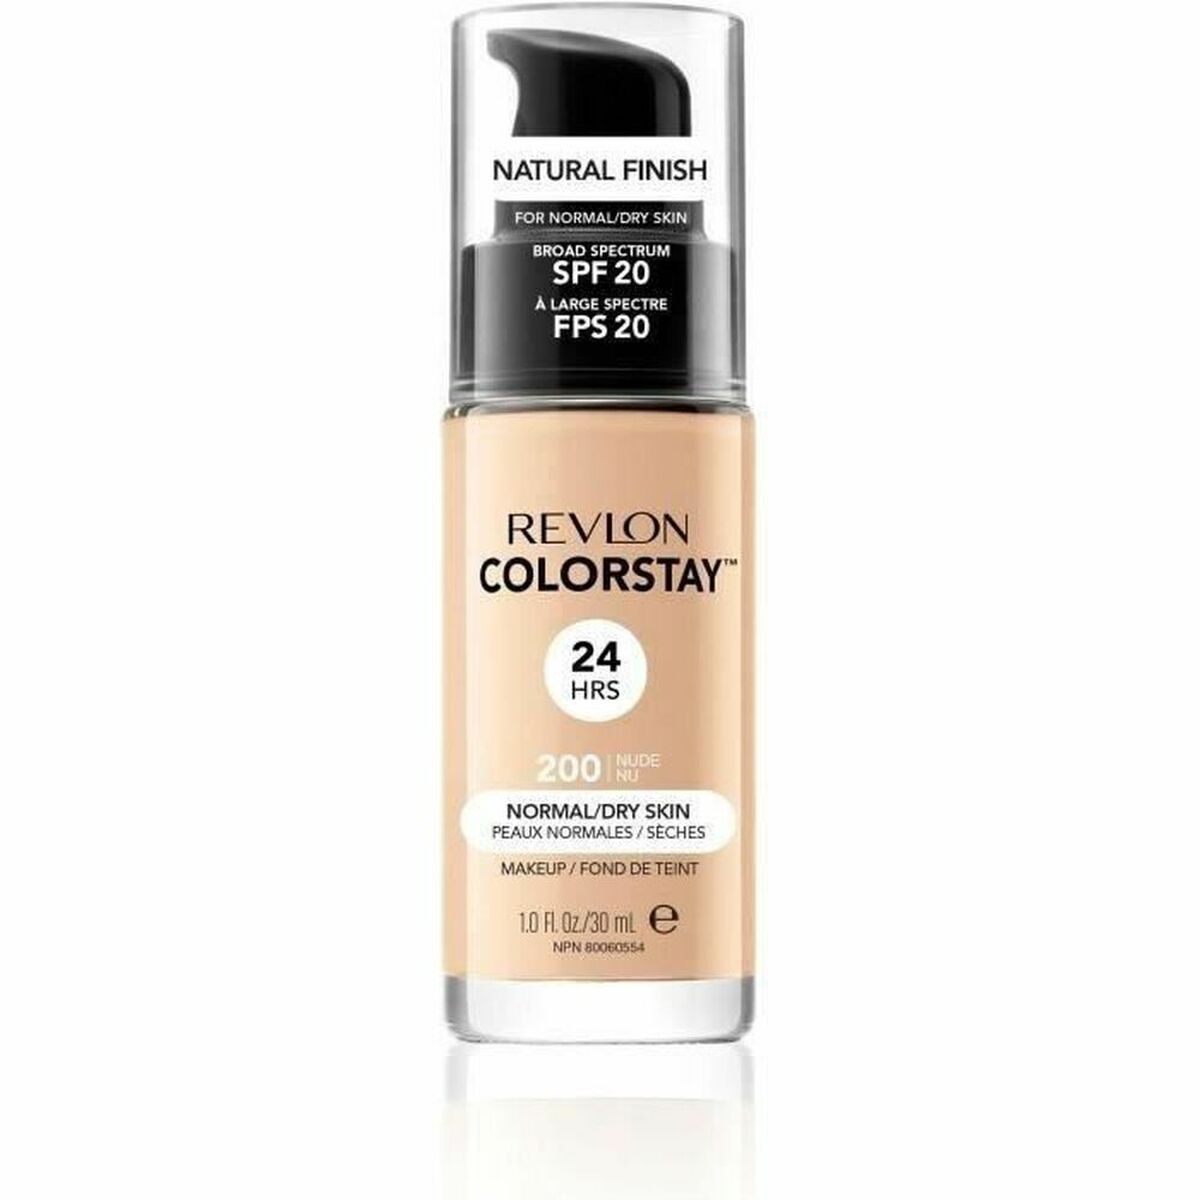 Fluid Foundation Make-up Colorstay Revlon Colorstay™